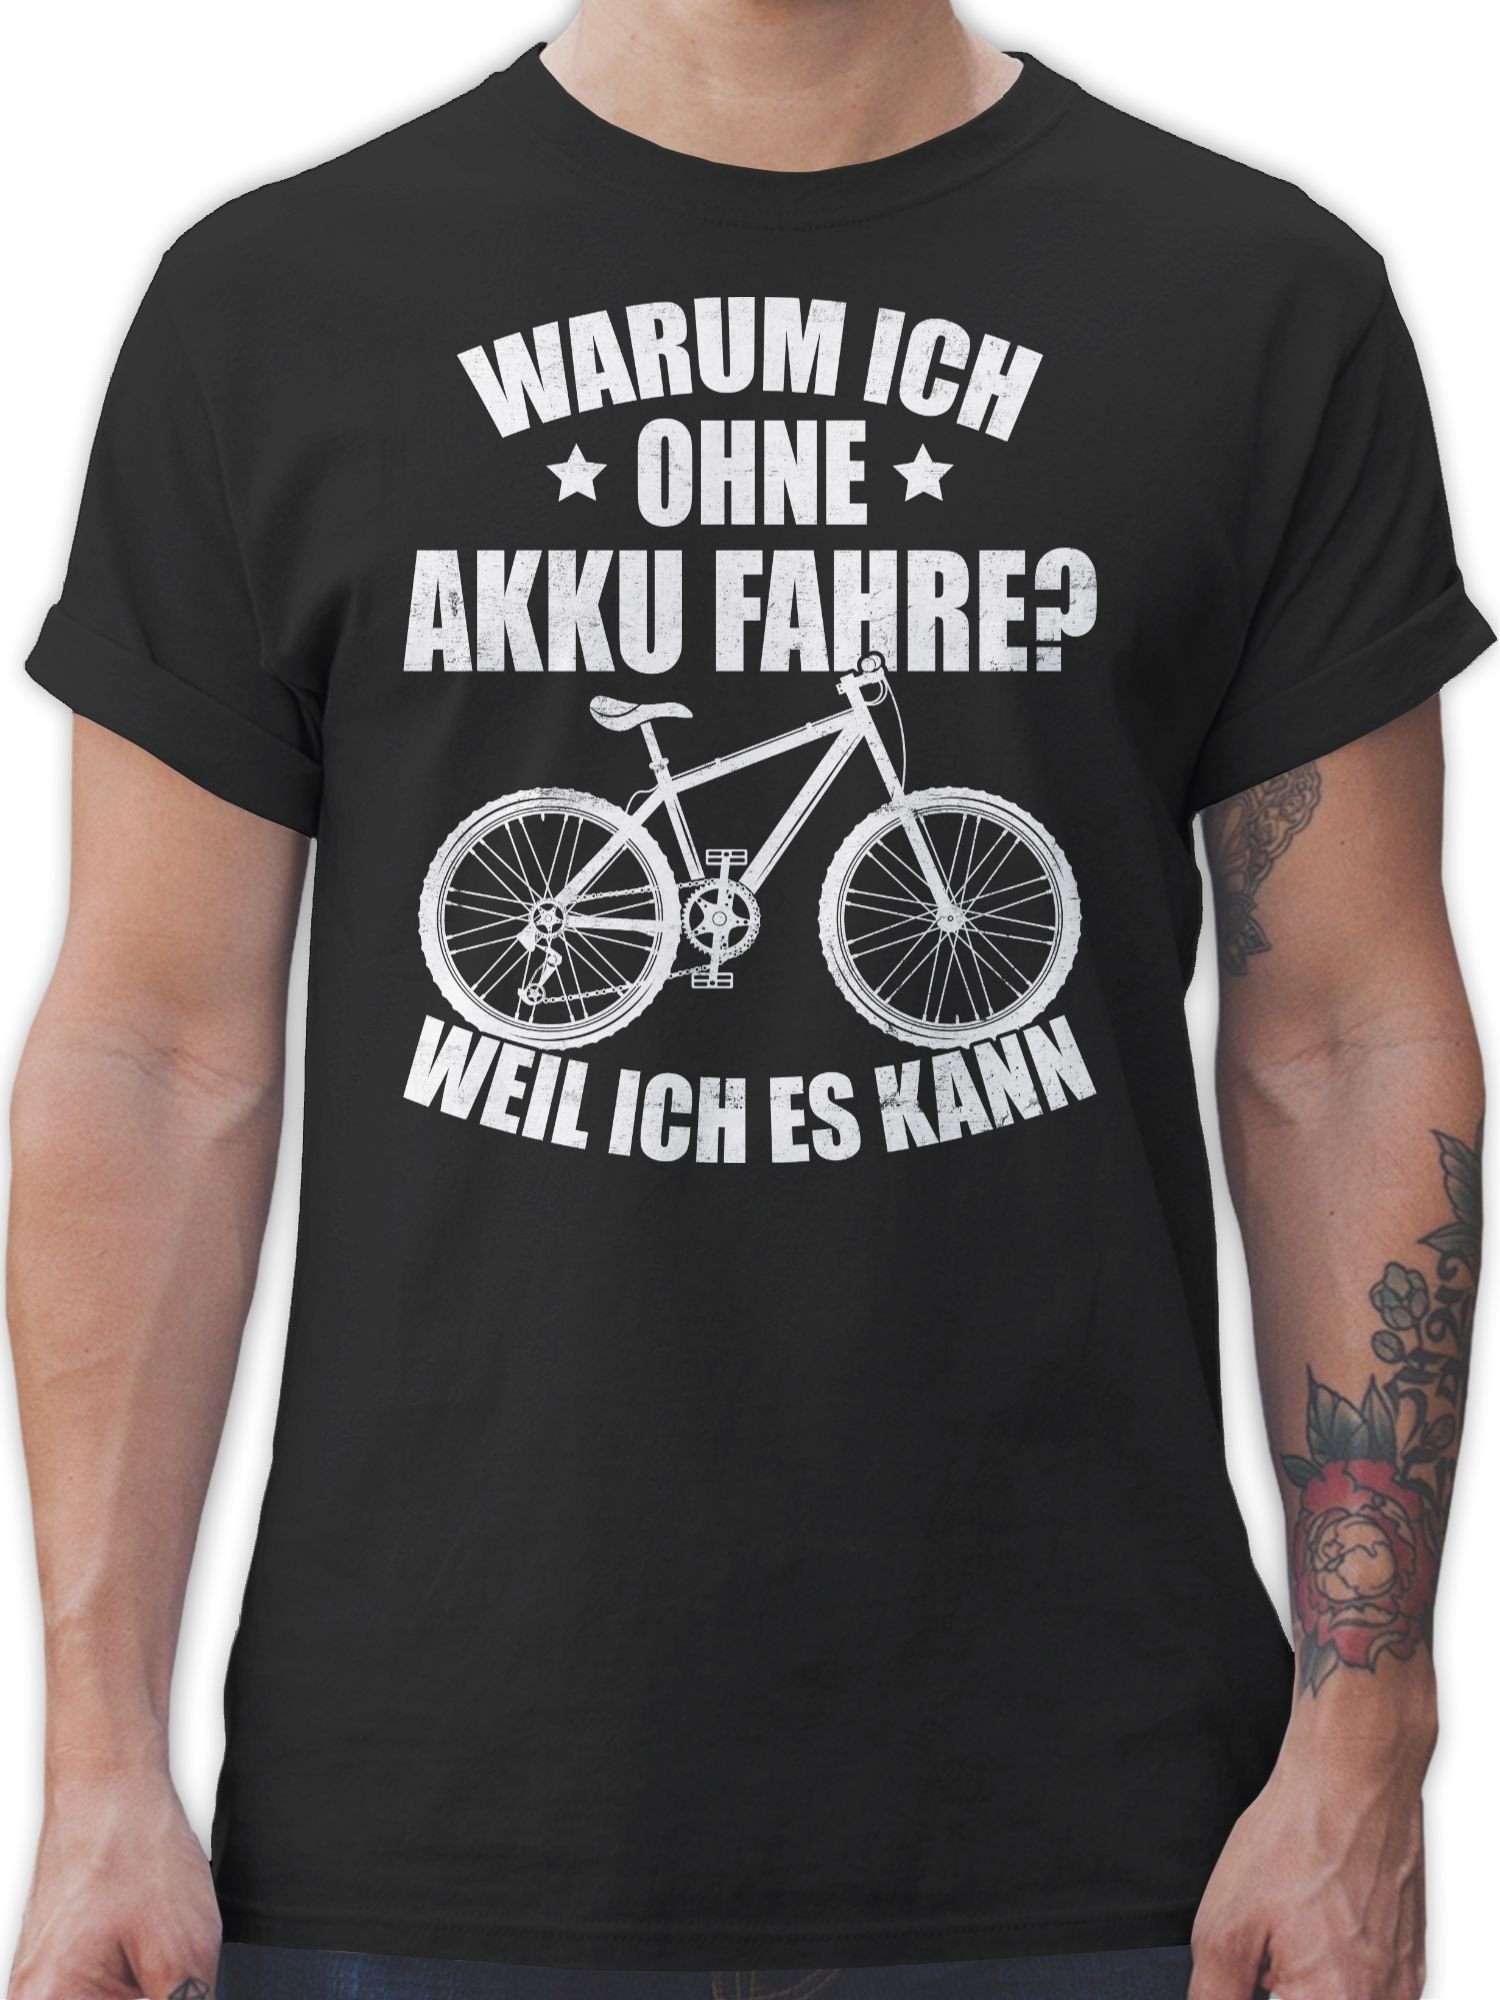 Shirtracer T-Shirt Warum ich ohne Akku fahre - weil ich es kann - weiß Fahrrad Bekleidung Radsport 01 Schwarz